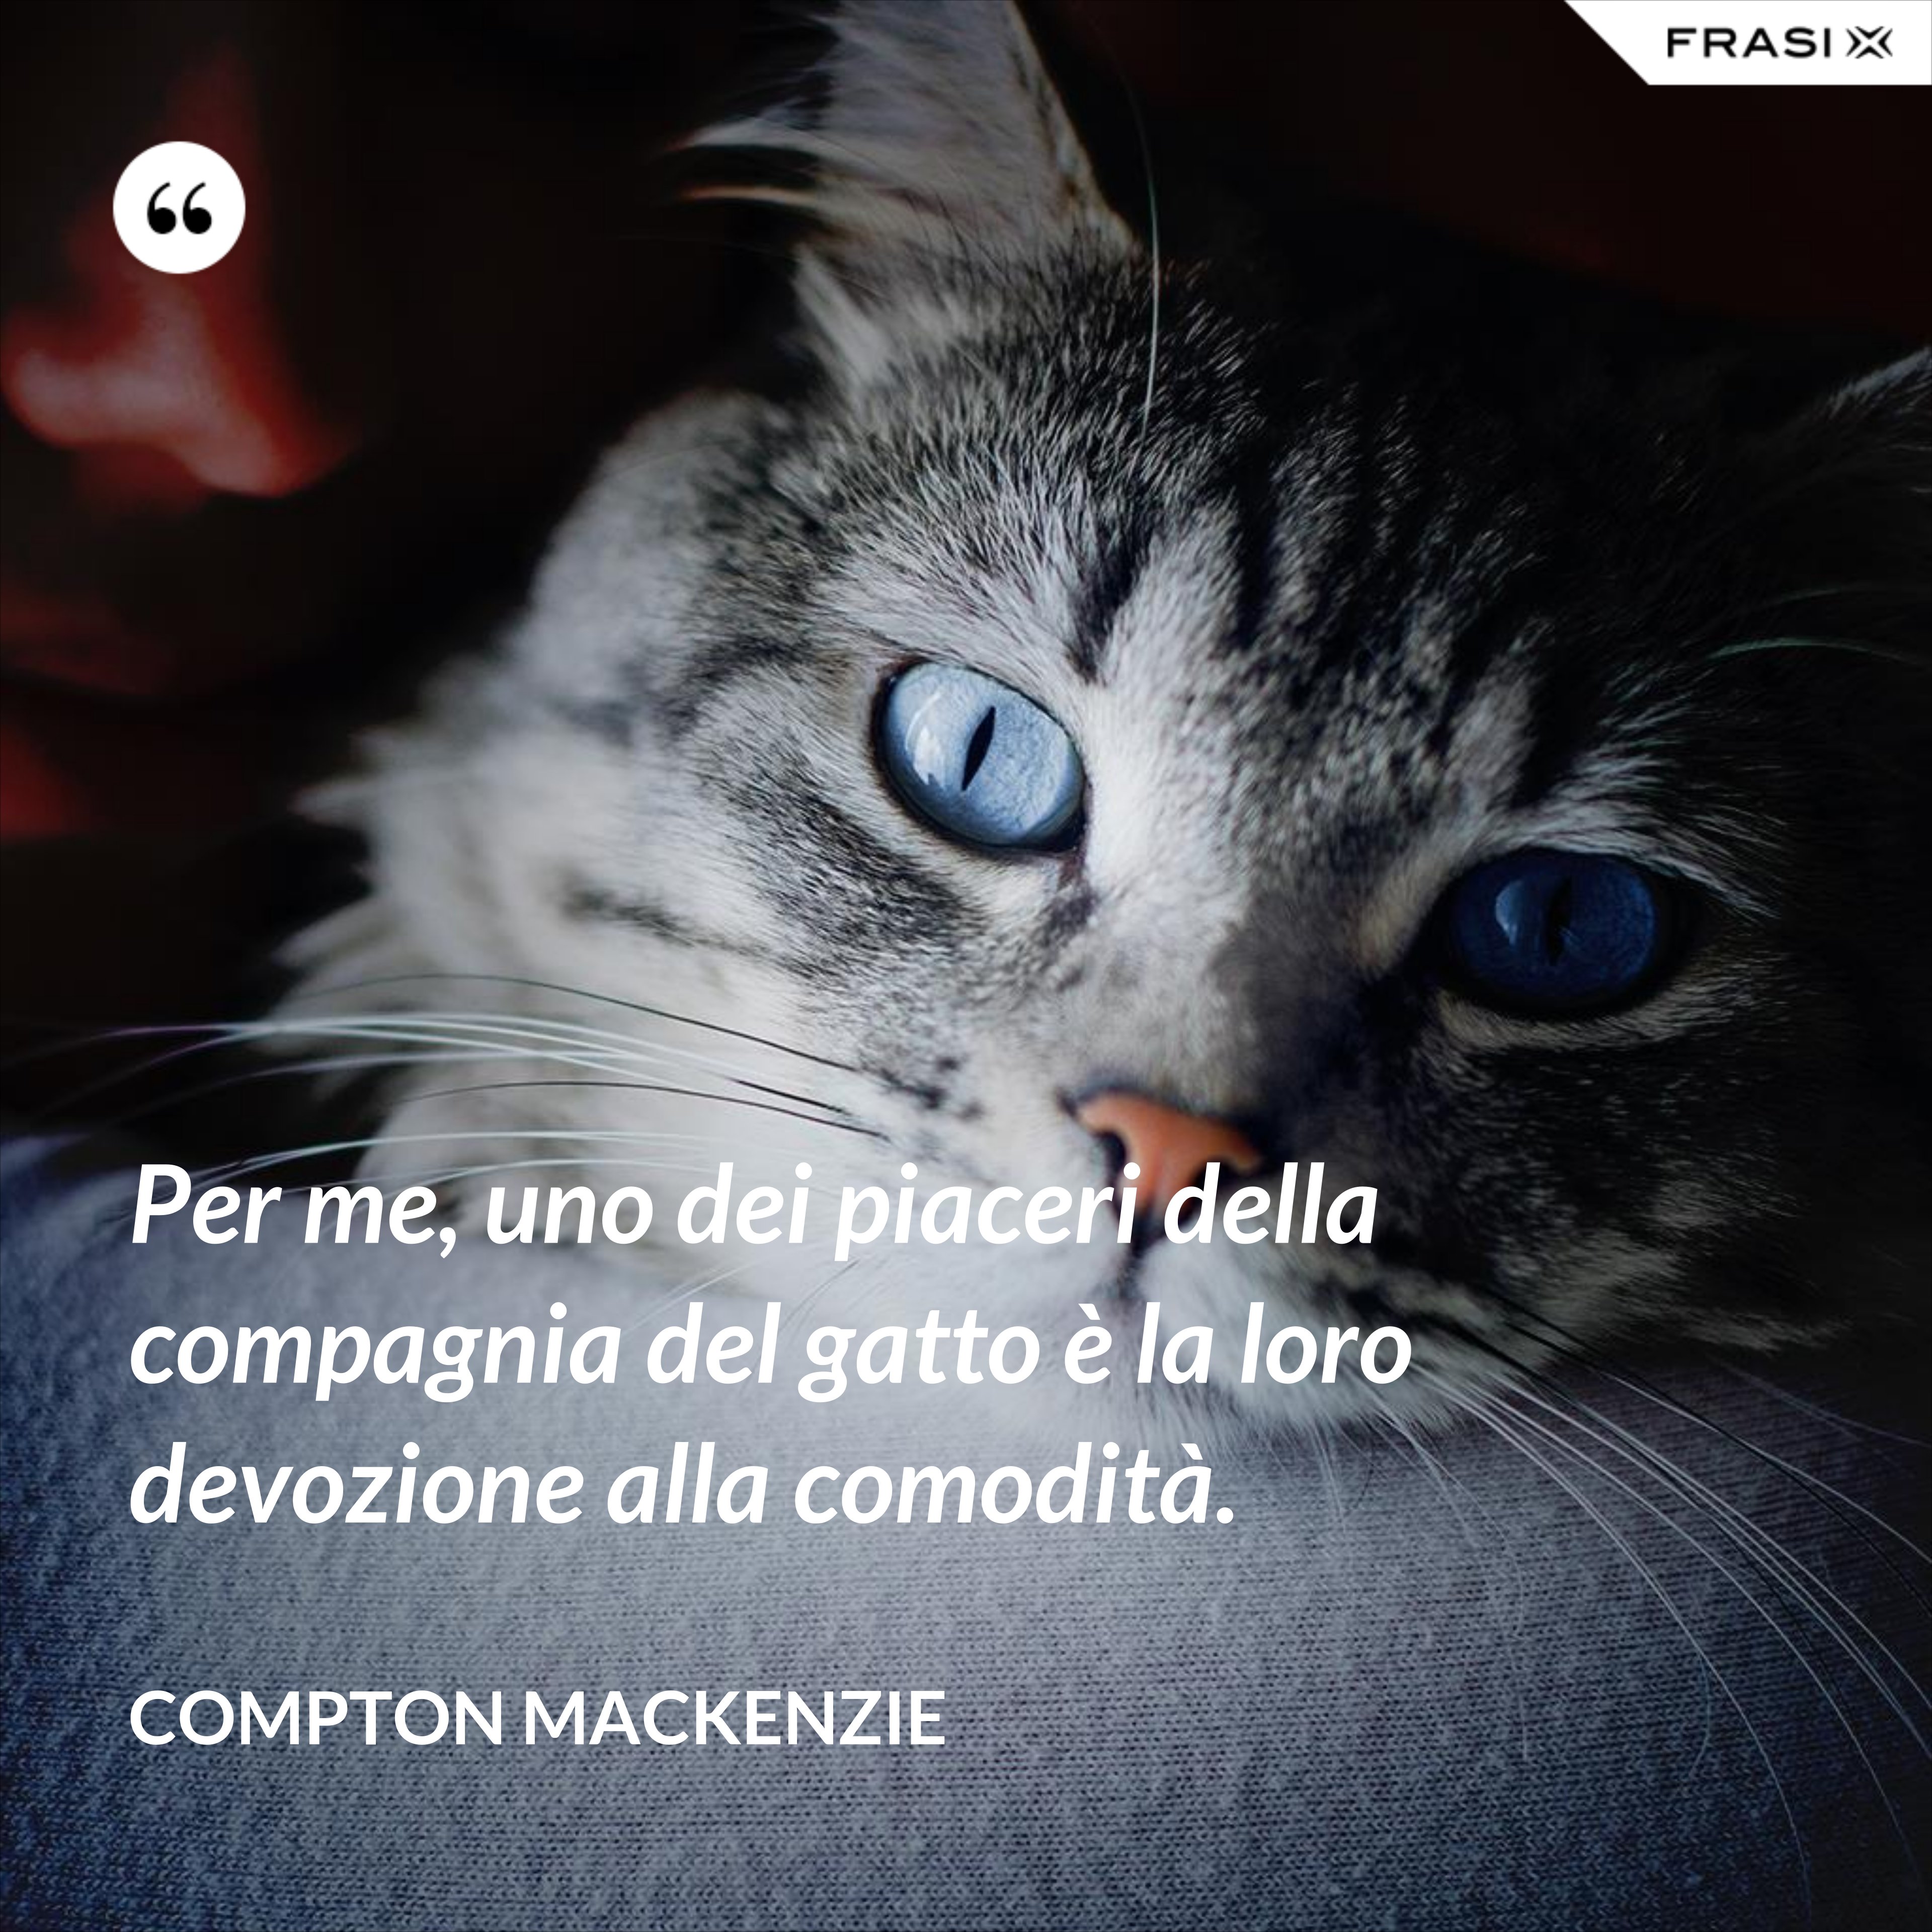 Per me, uno dei piaceri della compagnia del gatto è la loro devozione alla comodità. - Compton Mackenzie